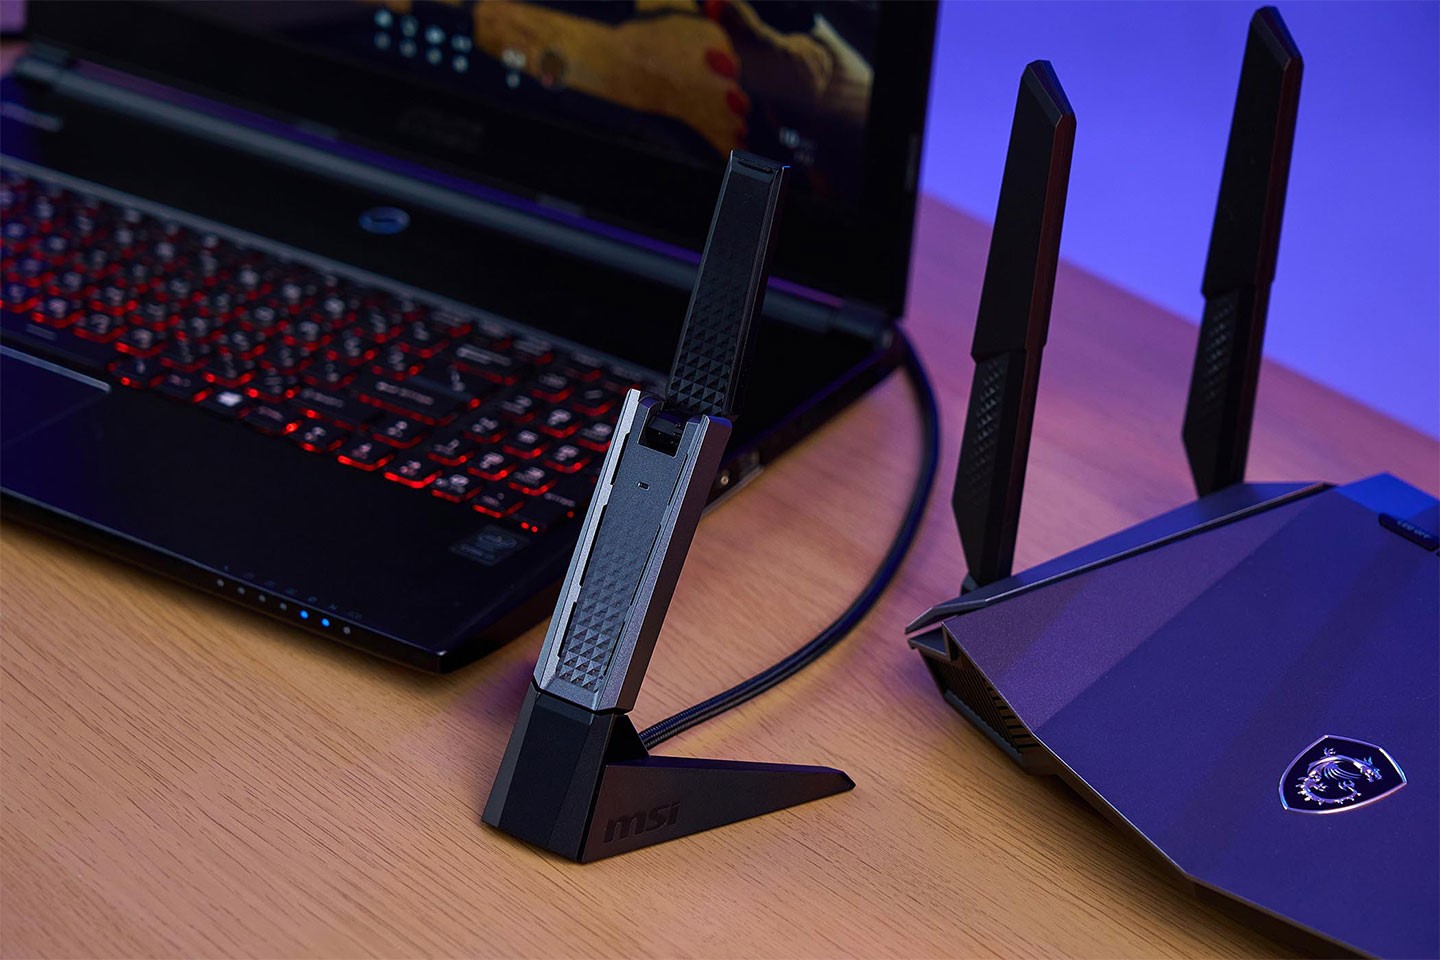 針對沒有支援 Wi-Fi 6 規格的桌機、電， WiFi 6 USB 3.2 雙頻無線網卡讓你能輕鬆升級。